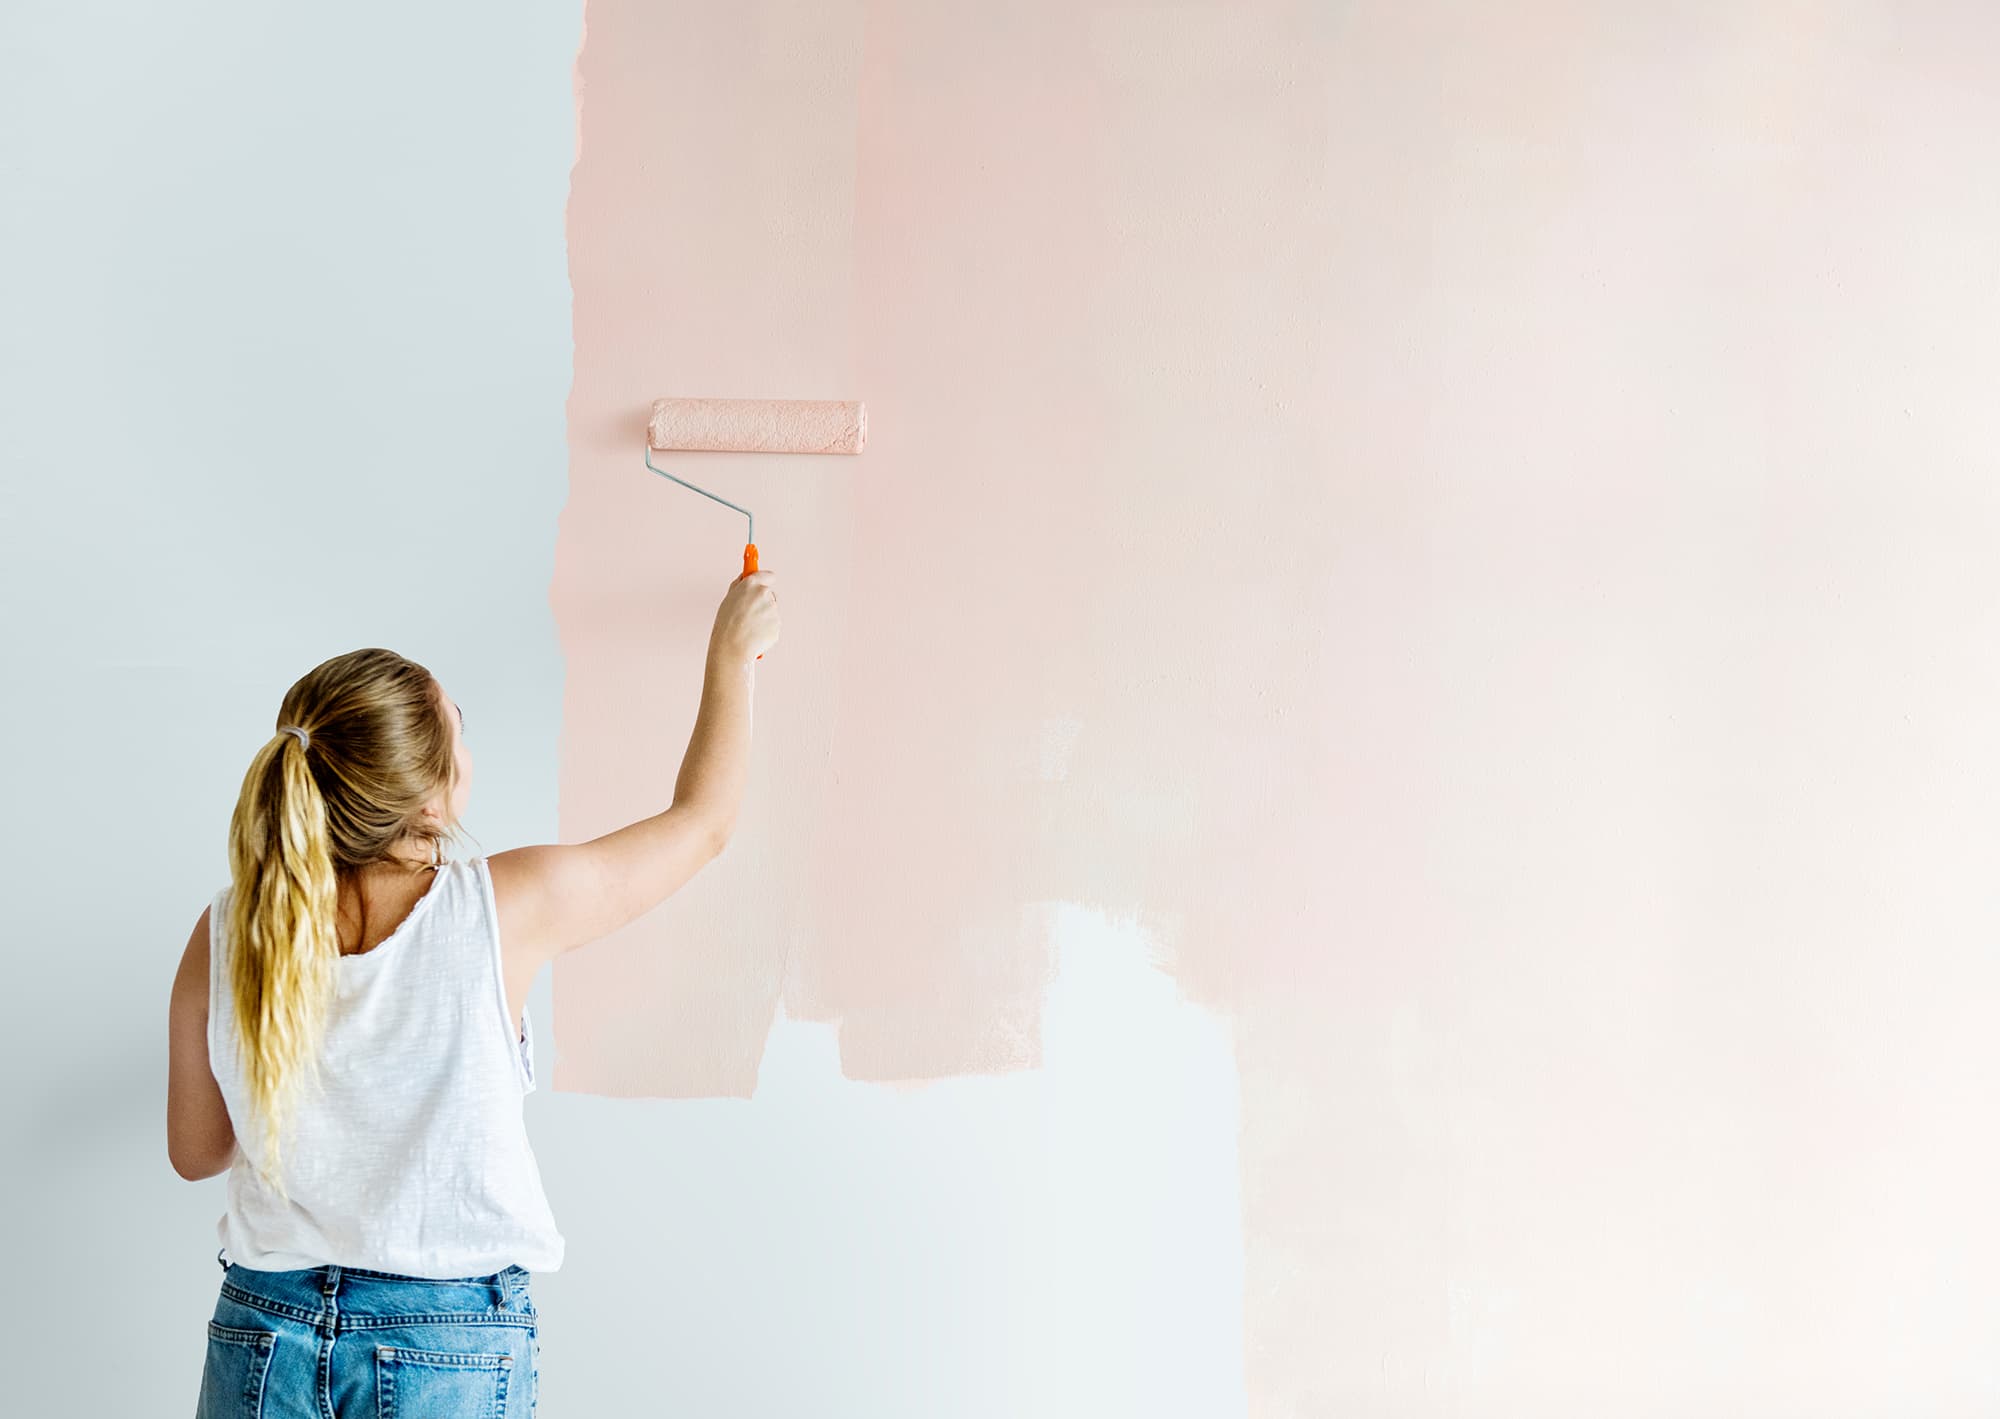  покрасить стены в квартире вместо обоев своими руками красиво фото